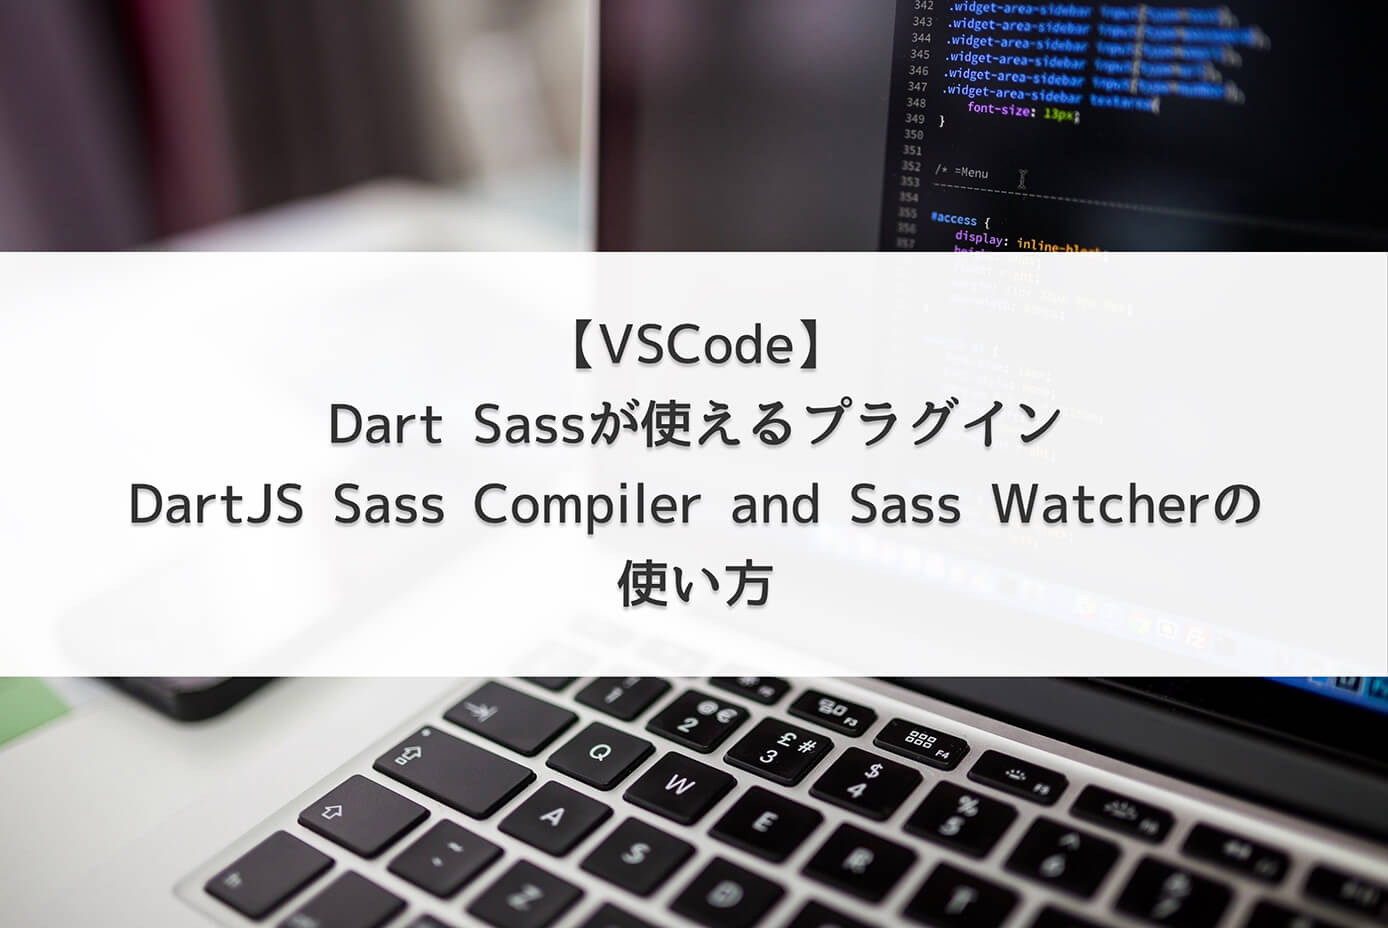 【VSCode】Dart Sassが使えるプラグイン『DartJS Sass Compiler and Sass Watcher』の使い方